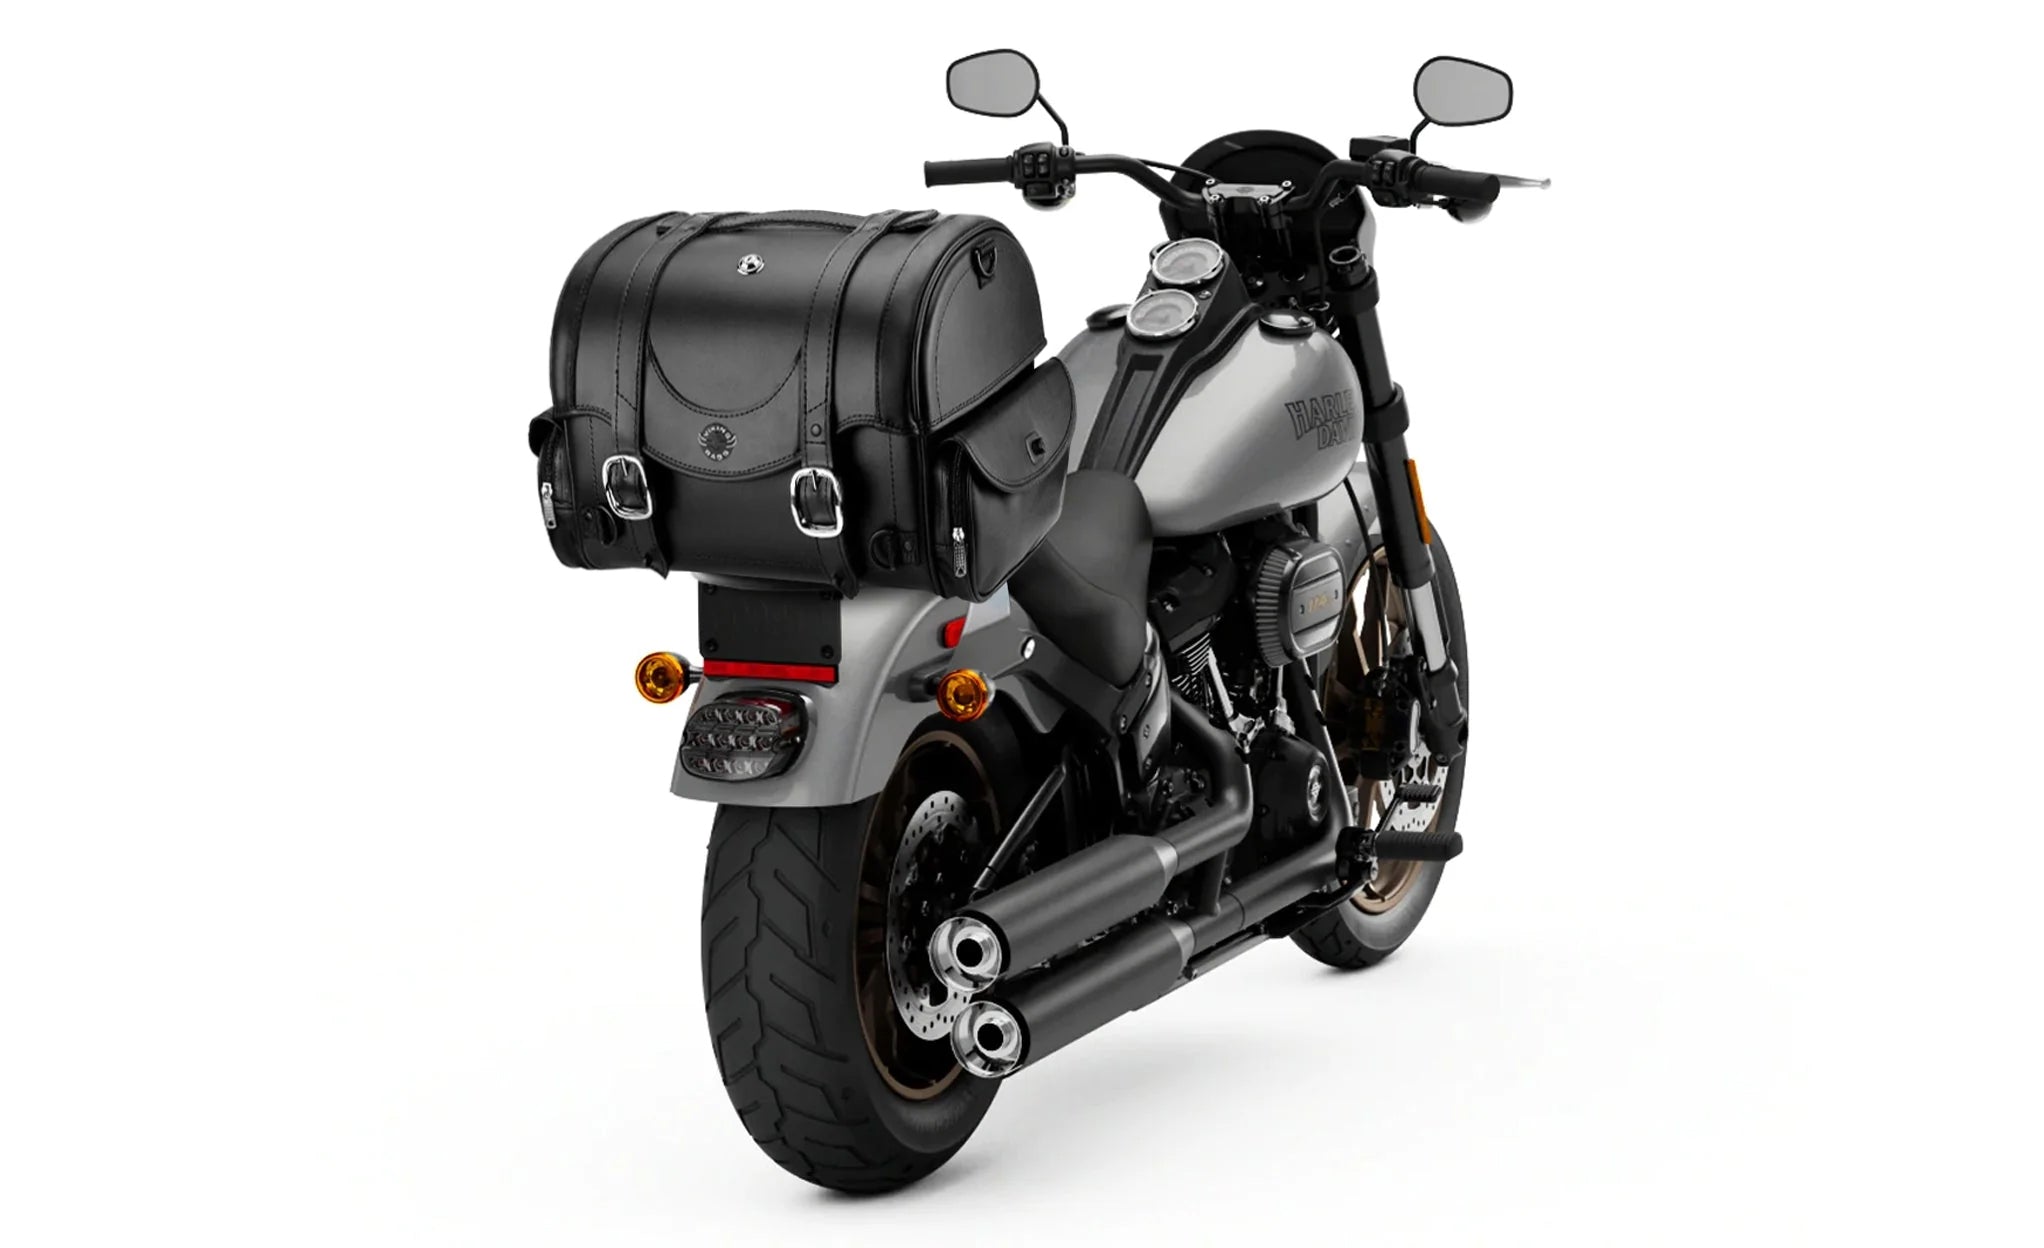 21L - Century Medium Yamaha Leather Motorcycle Sissy Bar Bag on Bike Photo @expand